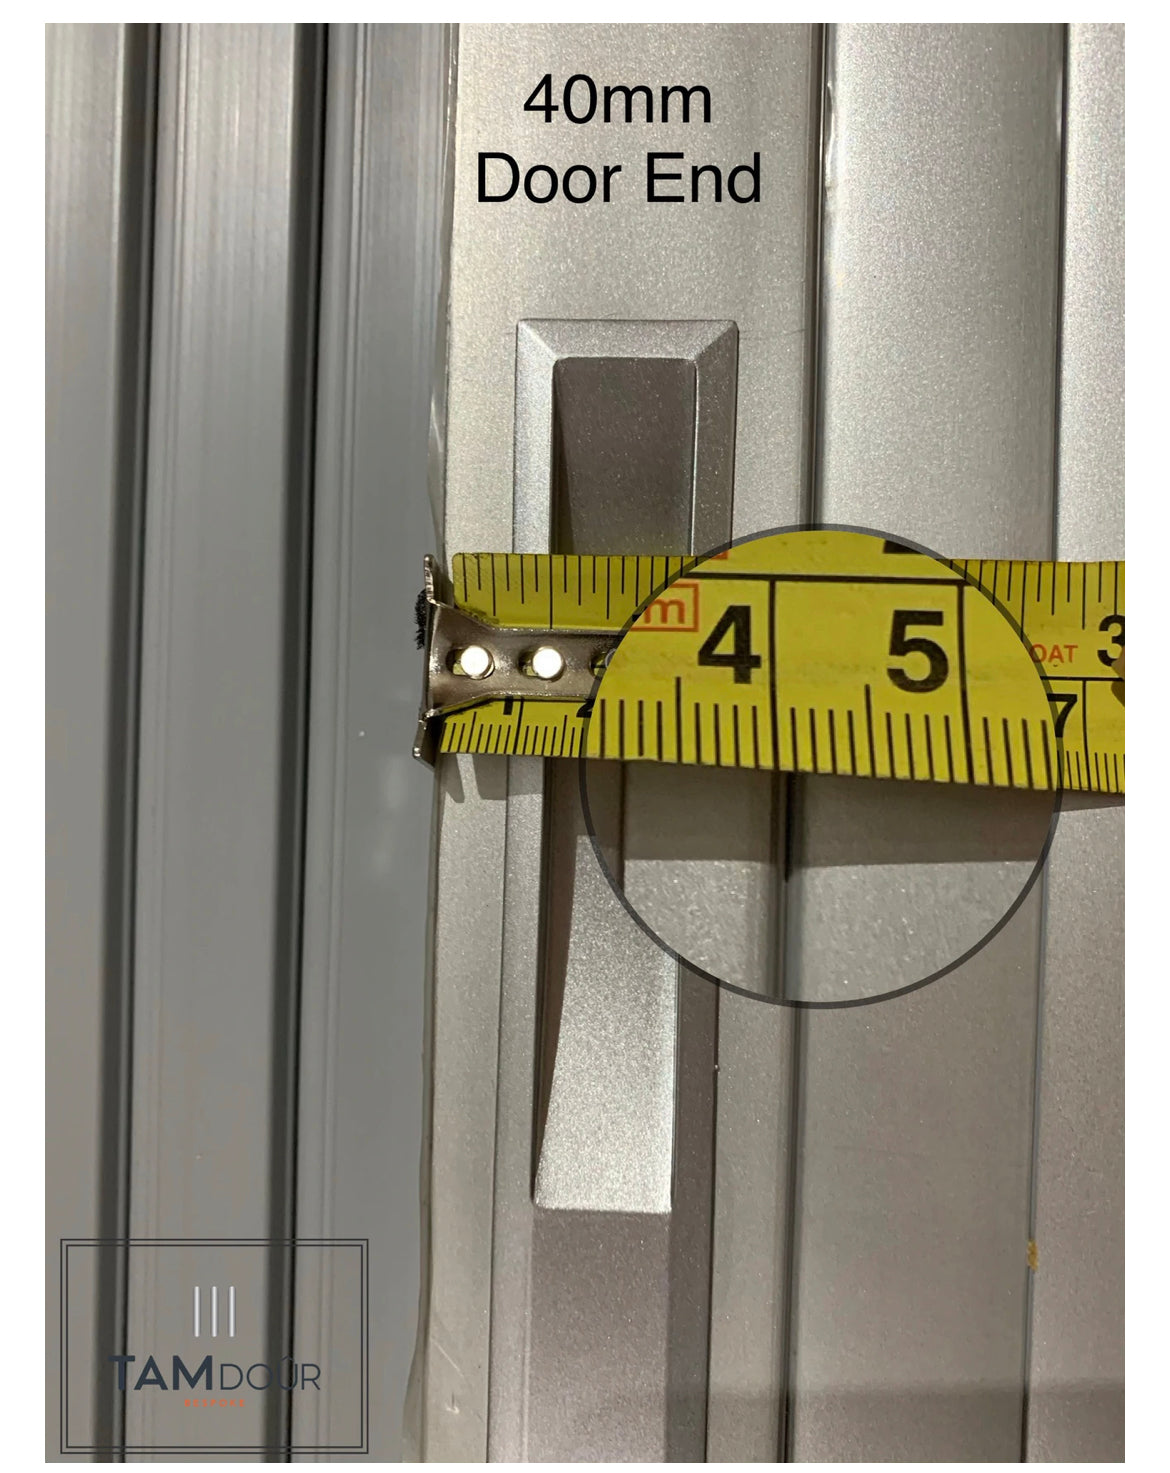 Sale TAMdoûr Tambour Door Silver Door & Silver Handle total height inc Track 1740mm x 540mm With FLEX TRACK upgrade